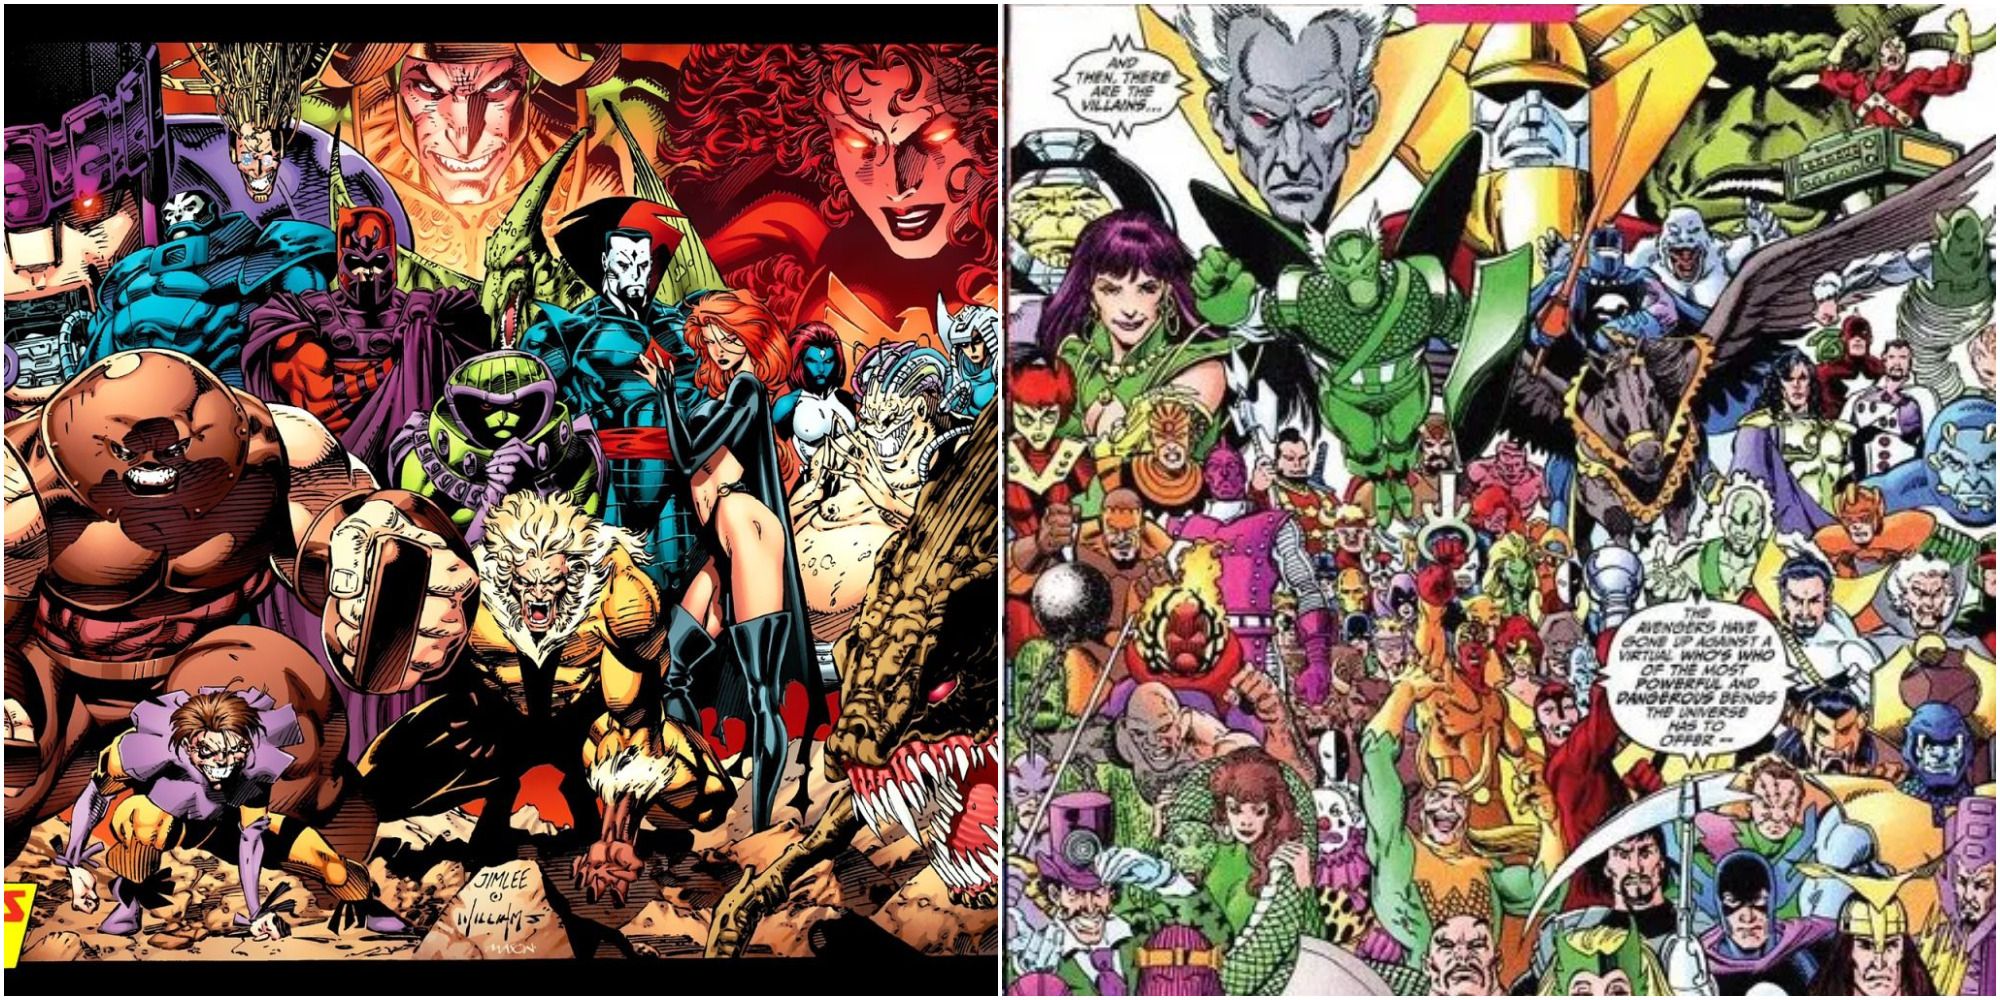 X-Men Villains and Avengers Villains